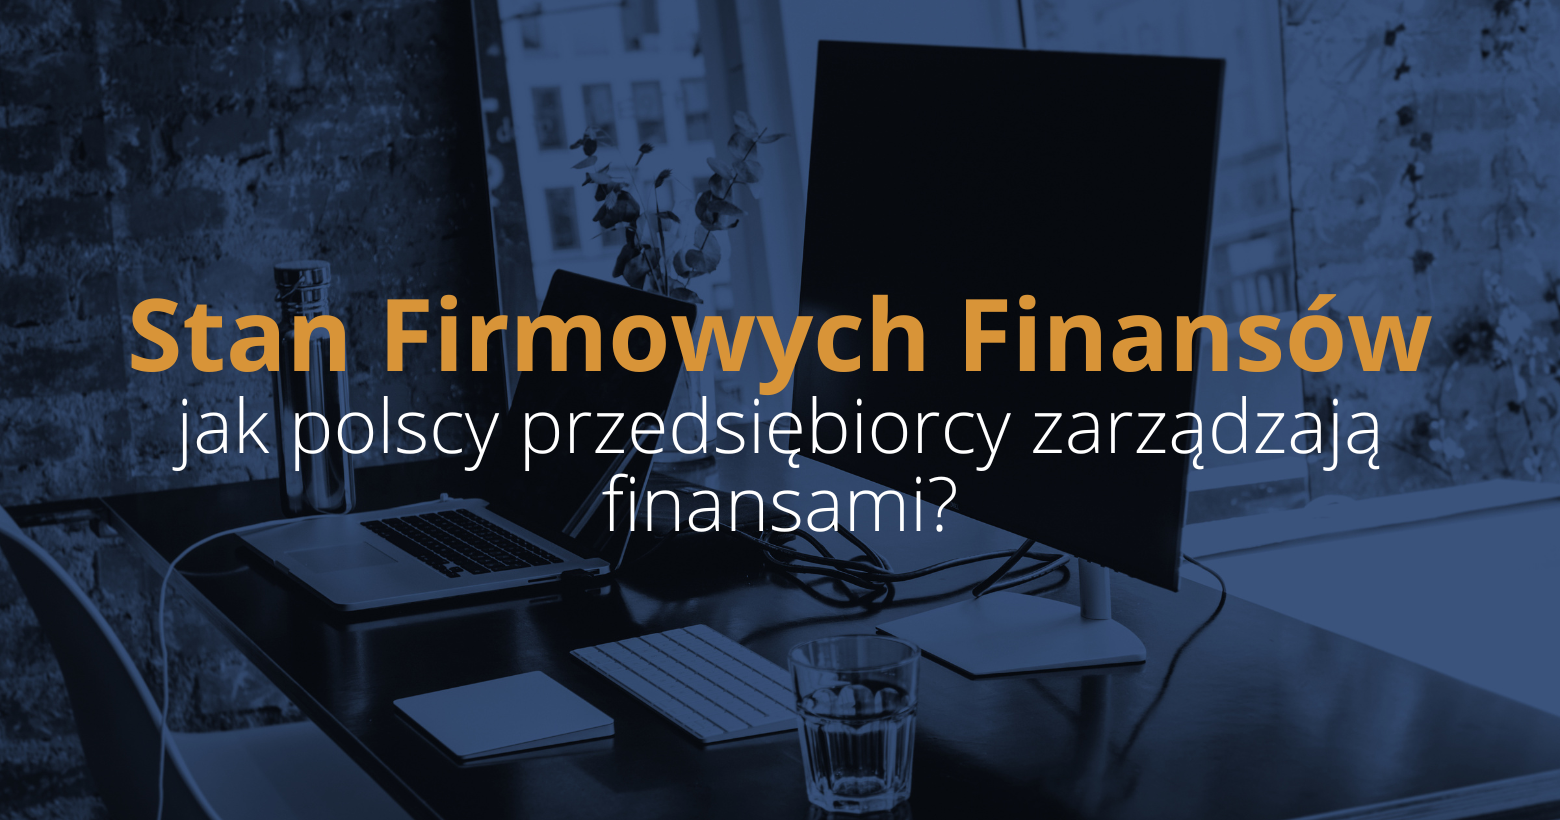 Jak polscy przedsiębiorcy zarządzają firmowymi finansami? Poznaj wyniki badania „Stan firmowych finansów 2023”!